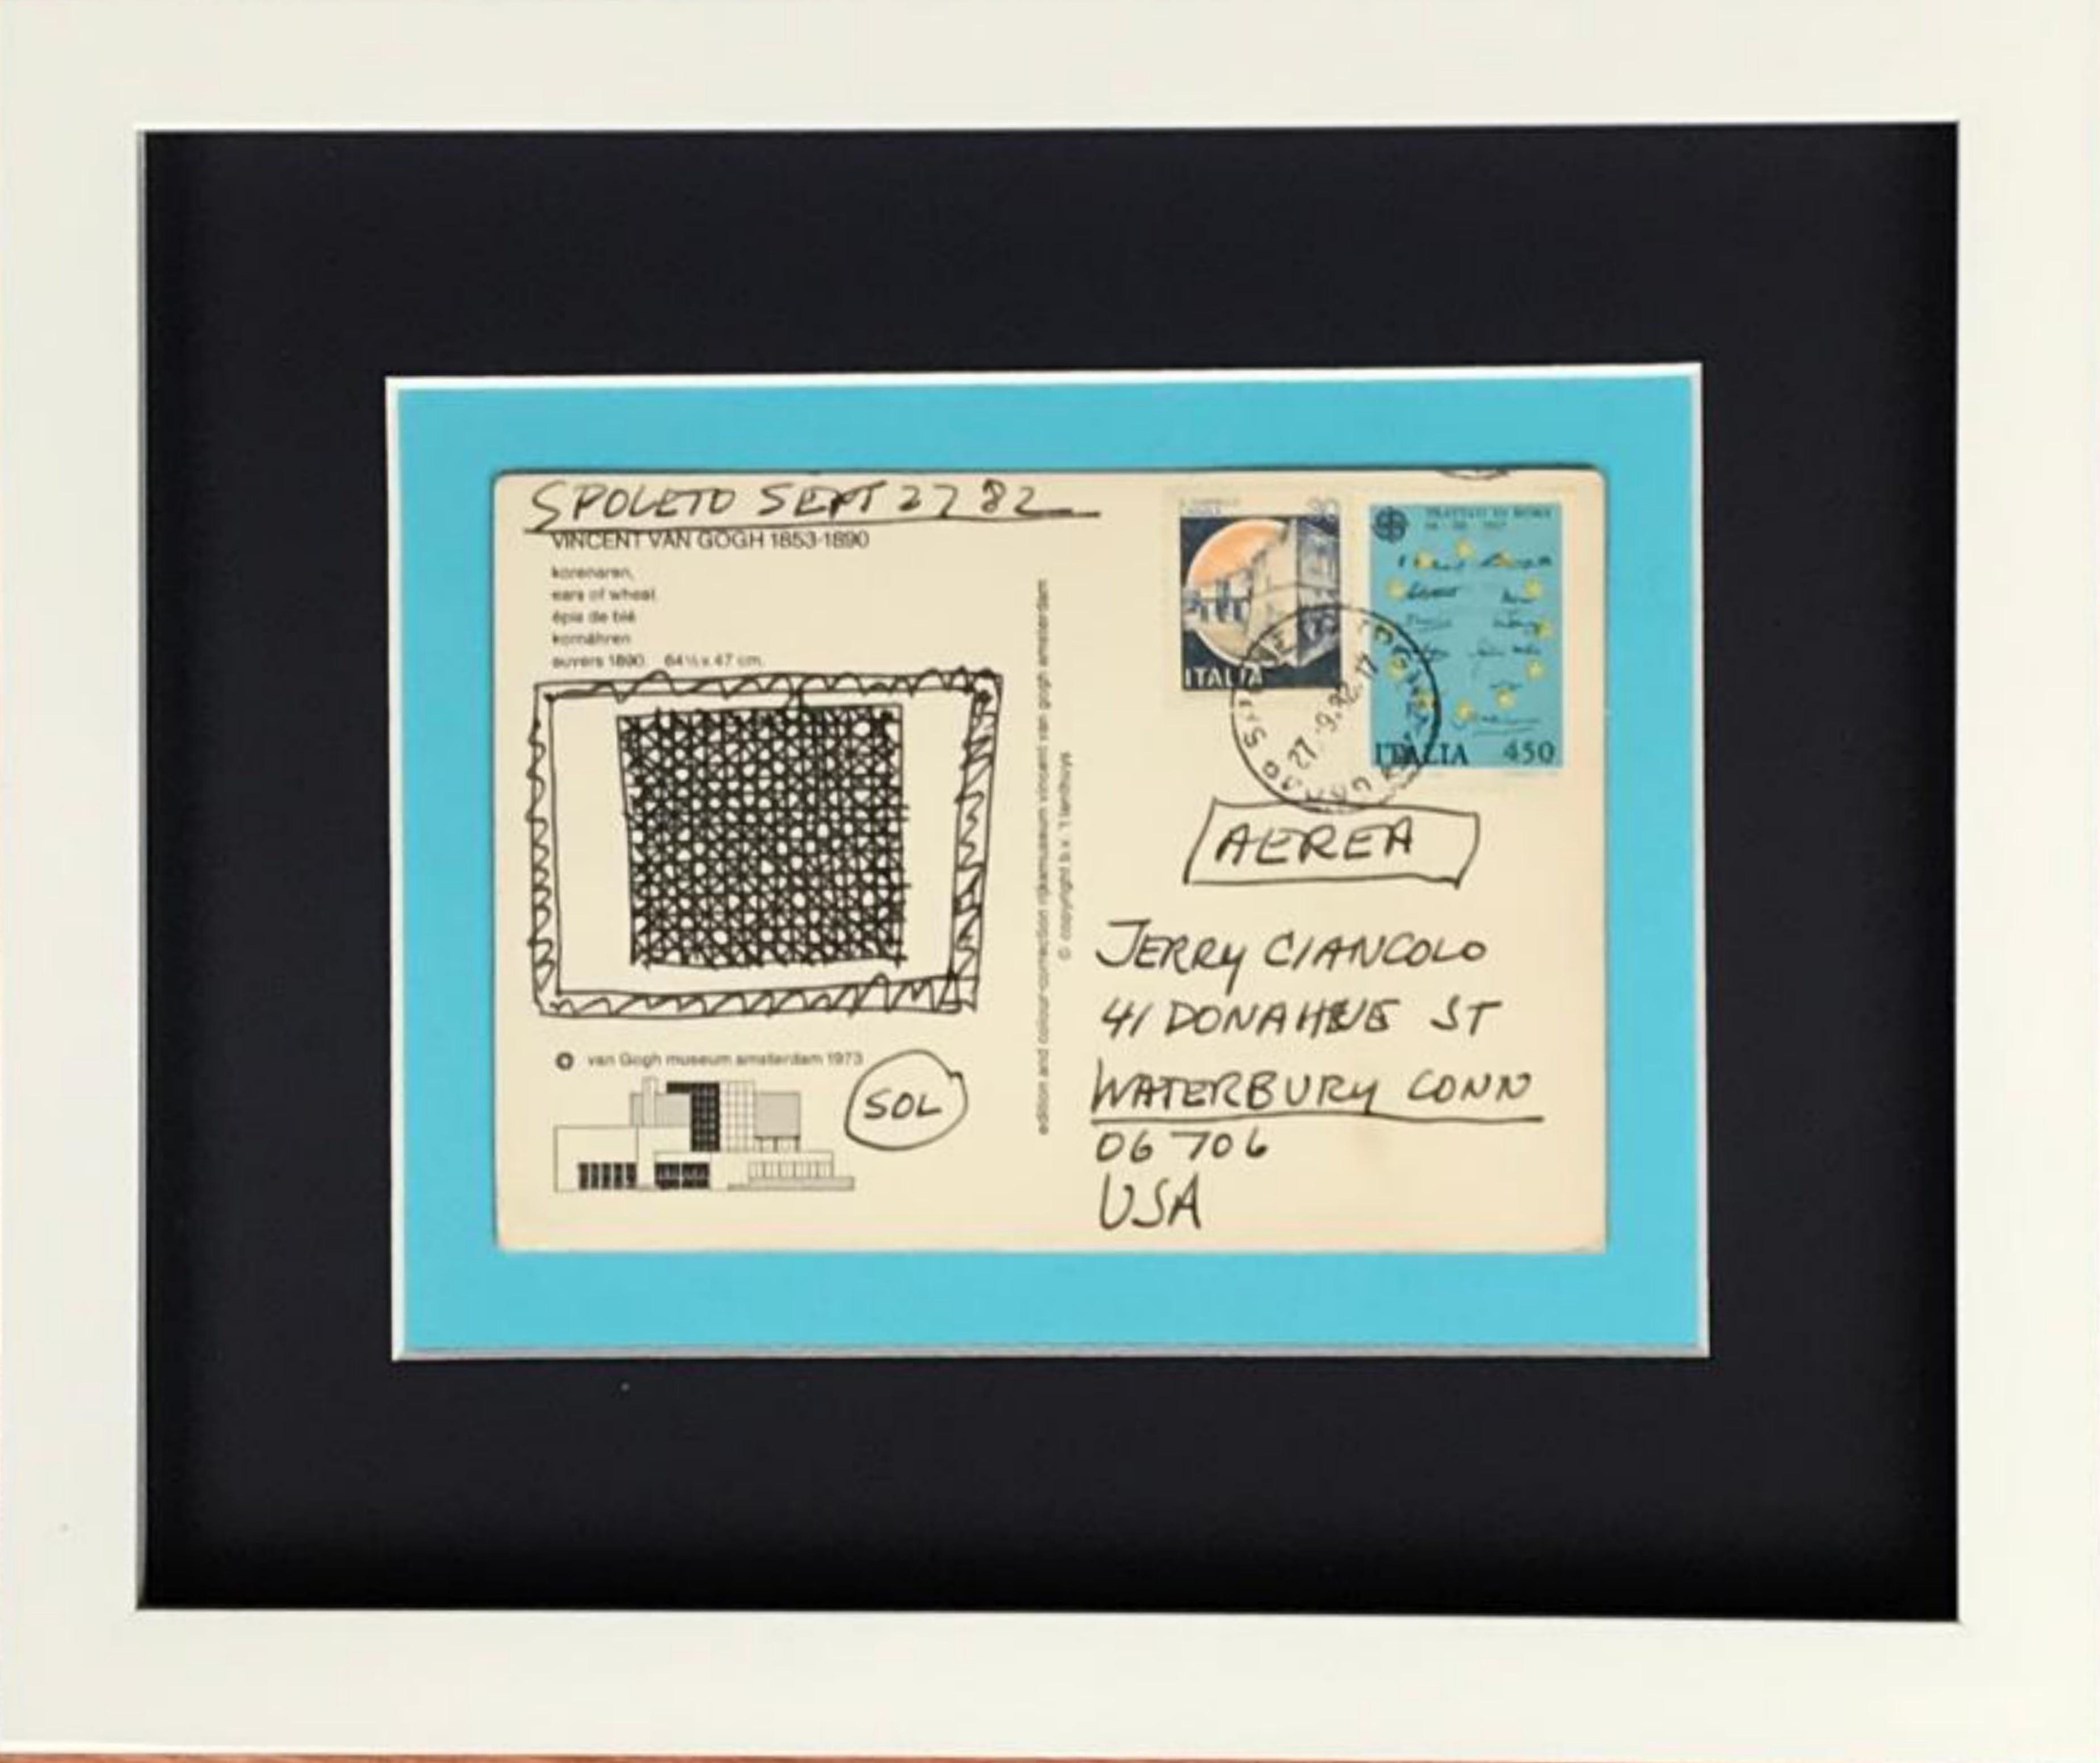 Sol LeWitt
Einzigartige geometrische Abstraktion auf Postkarte, 1982
Originalzeichnung auf Postkarte aus dem Van-Gogh-Museum (Amsterdam), abgesandt, frankiert und abgestempelt aus Spoleto, Italien. 
Beschriftet und signiert von Sol Lewitt mit der